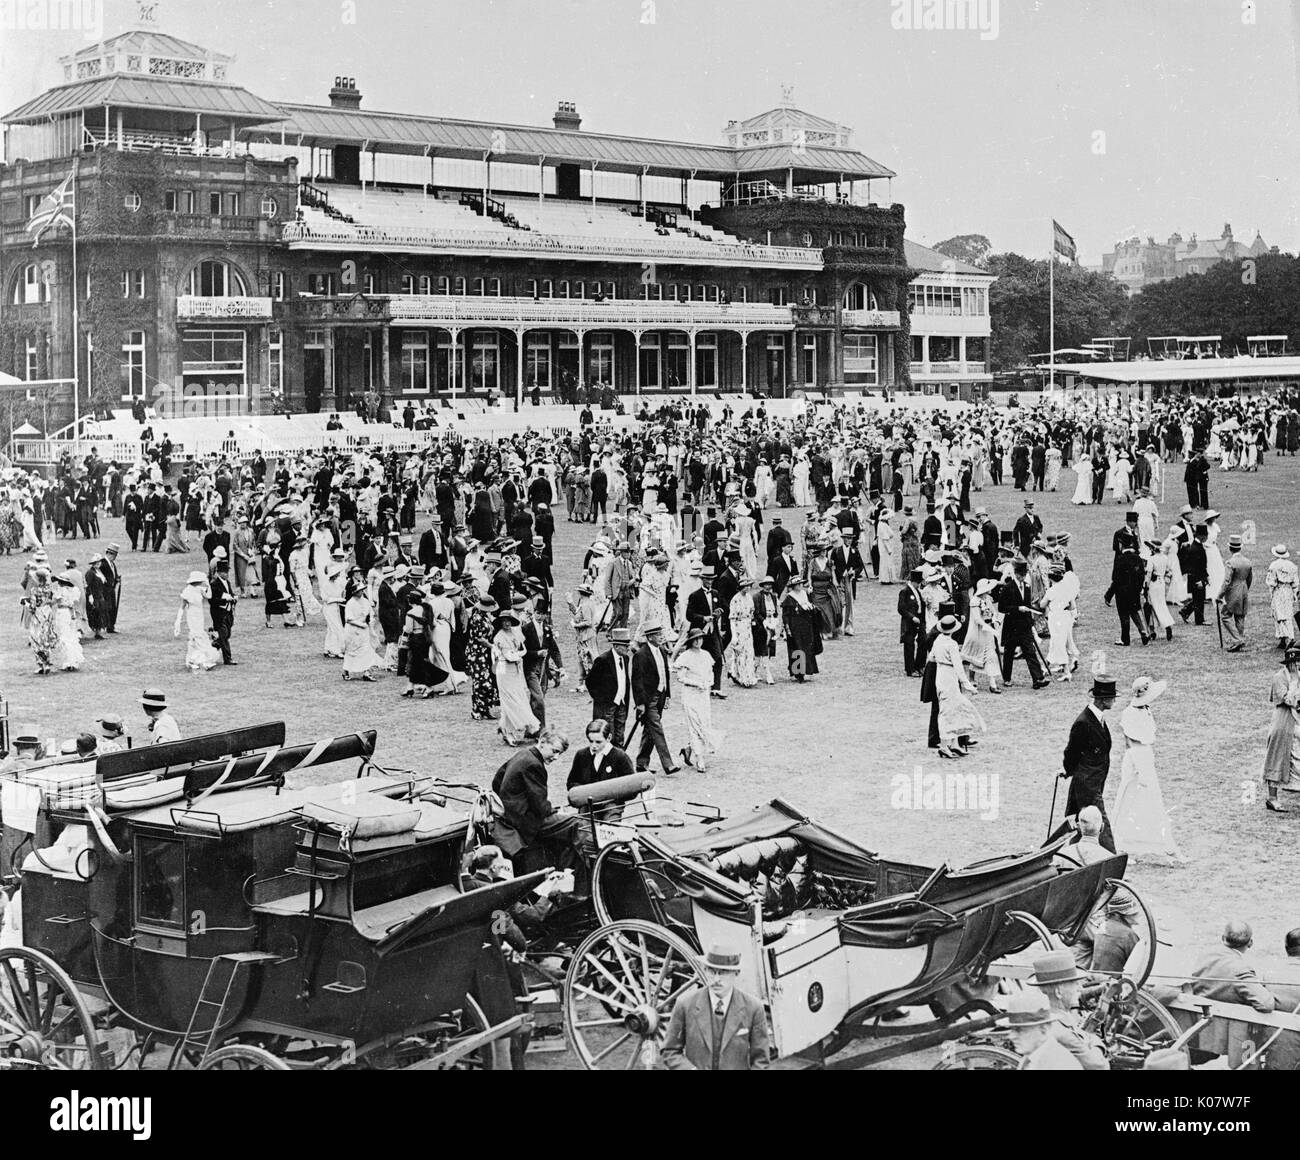 Szene während der jährlichen Eton v Harrow Cricket-spiel an den Lords Cricket Ground in NW-London, 13. Juli 1934. Menschen flanieren über während der Mittagspause, mit traditionellen Kutschen im Vordergrund. Das Spiel selbst war ein Unentschieden. Datum: 1934 Stockfoto